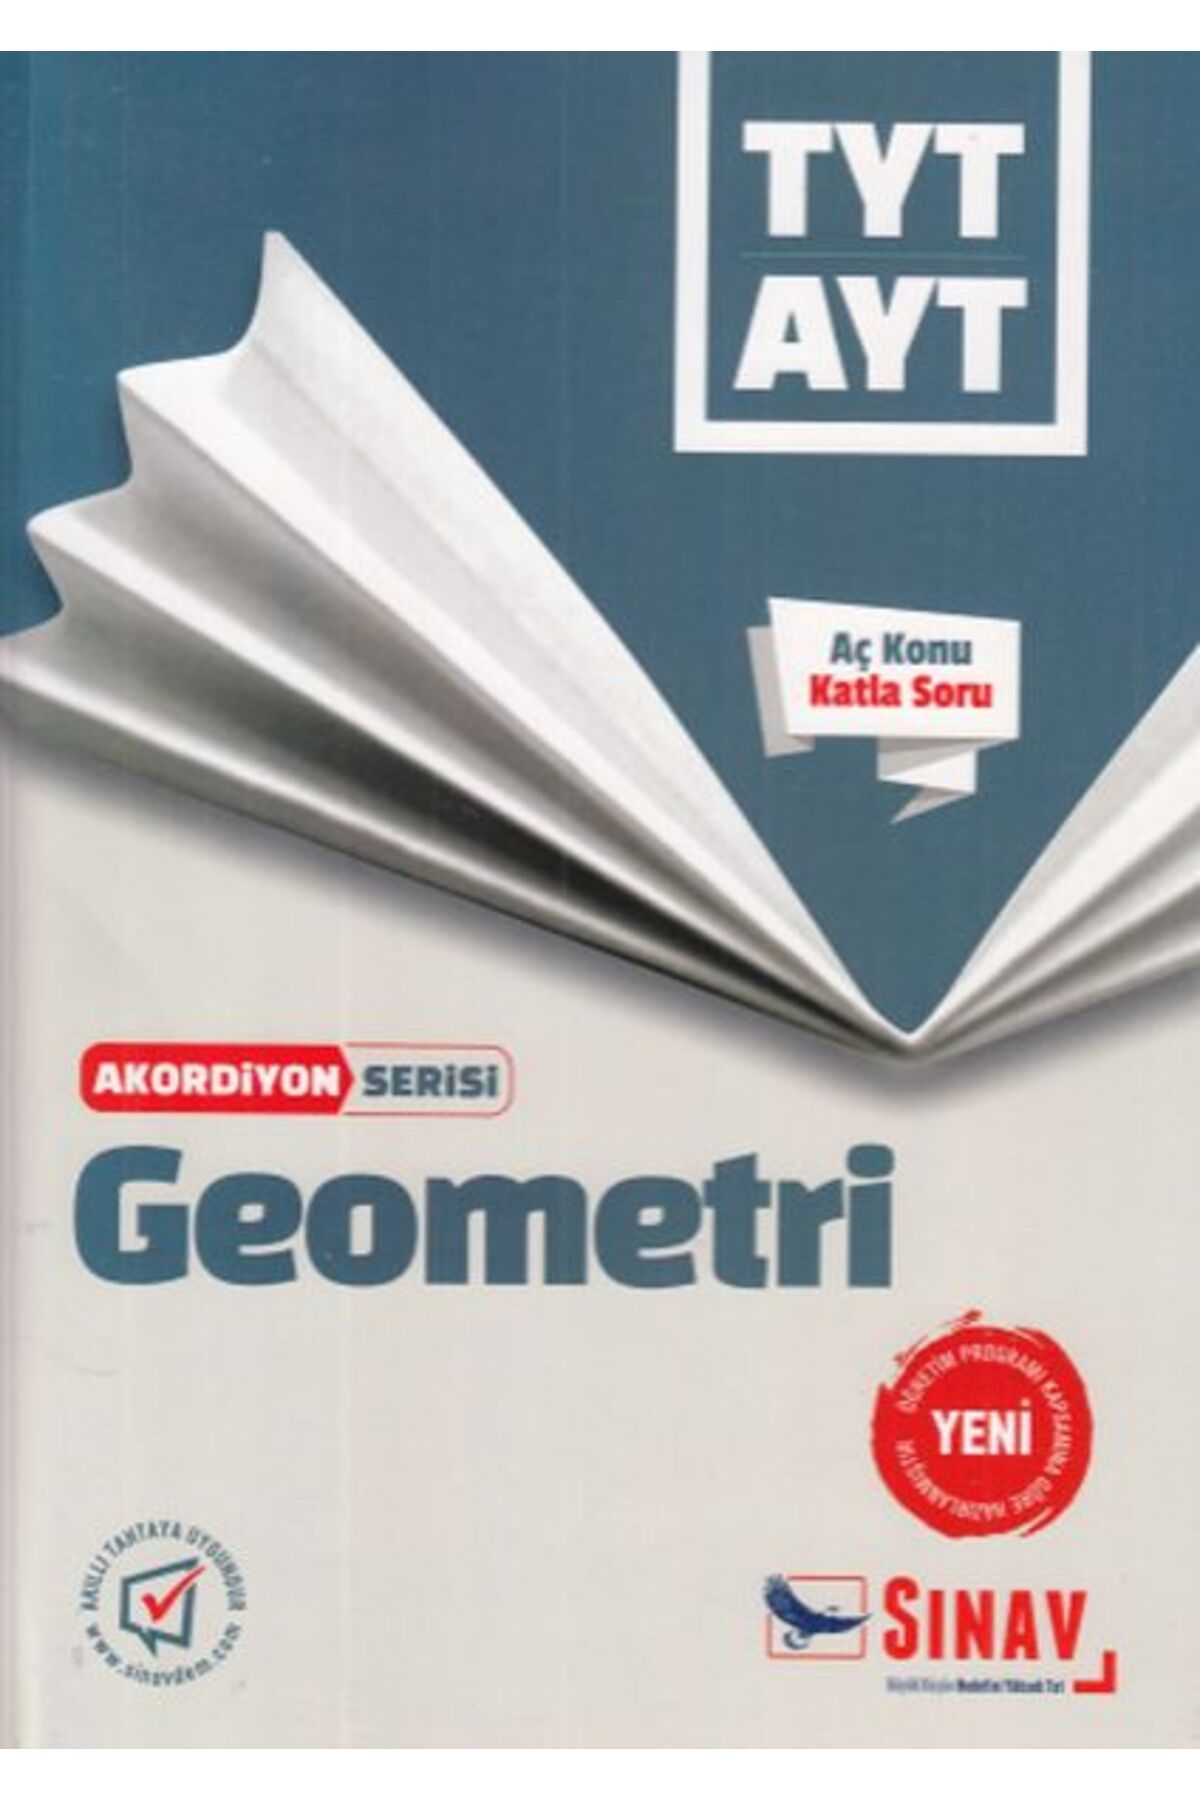 Sınav Yayınları Sınav TYT AYT Geometri Akordiyon Serisi (Yeni) Sınav Dergisi Yayınları kitap